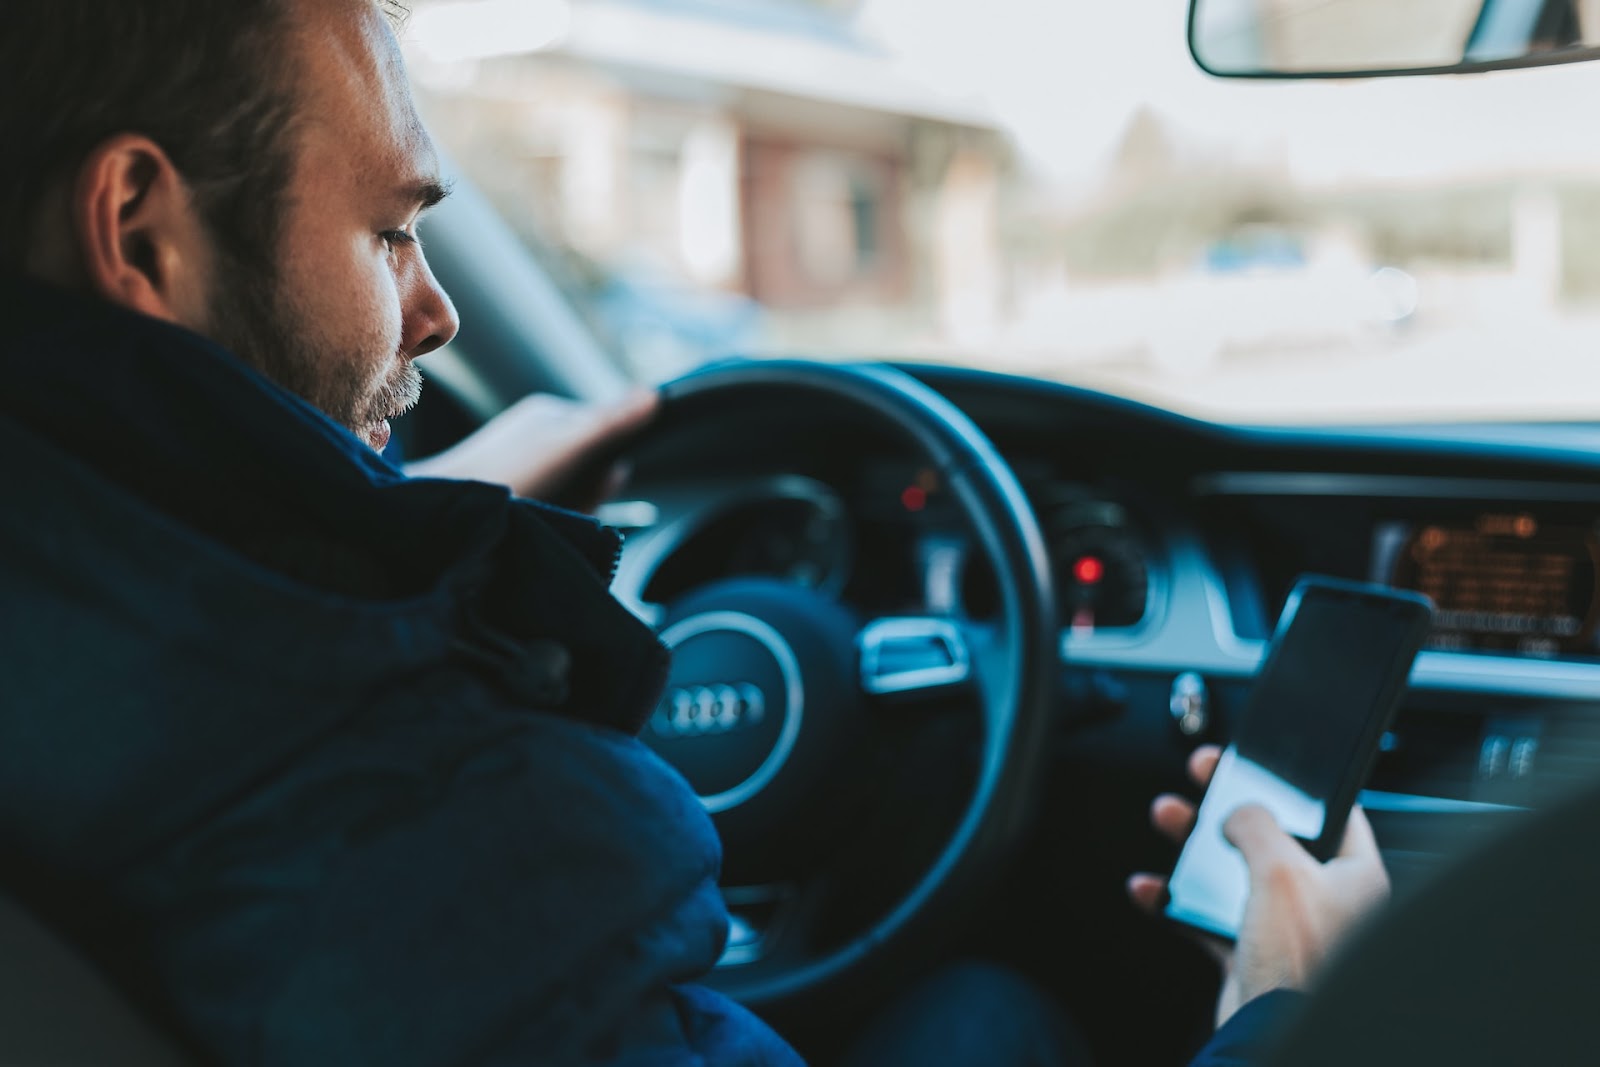 En qué situaciones nos pueden multar por llevar el soporte del móvil en el  coche?